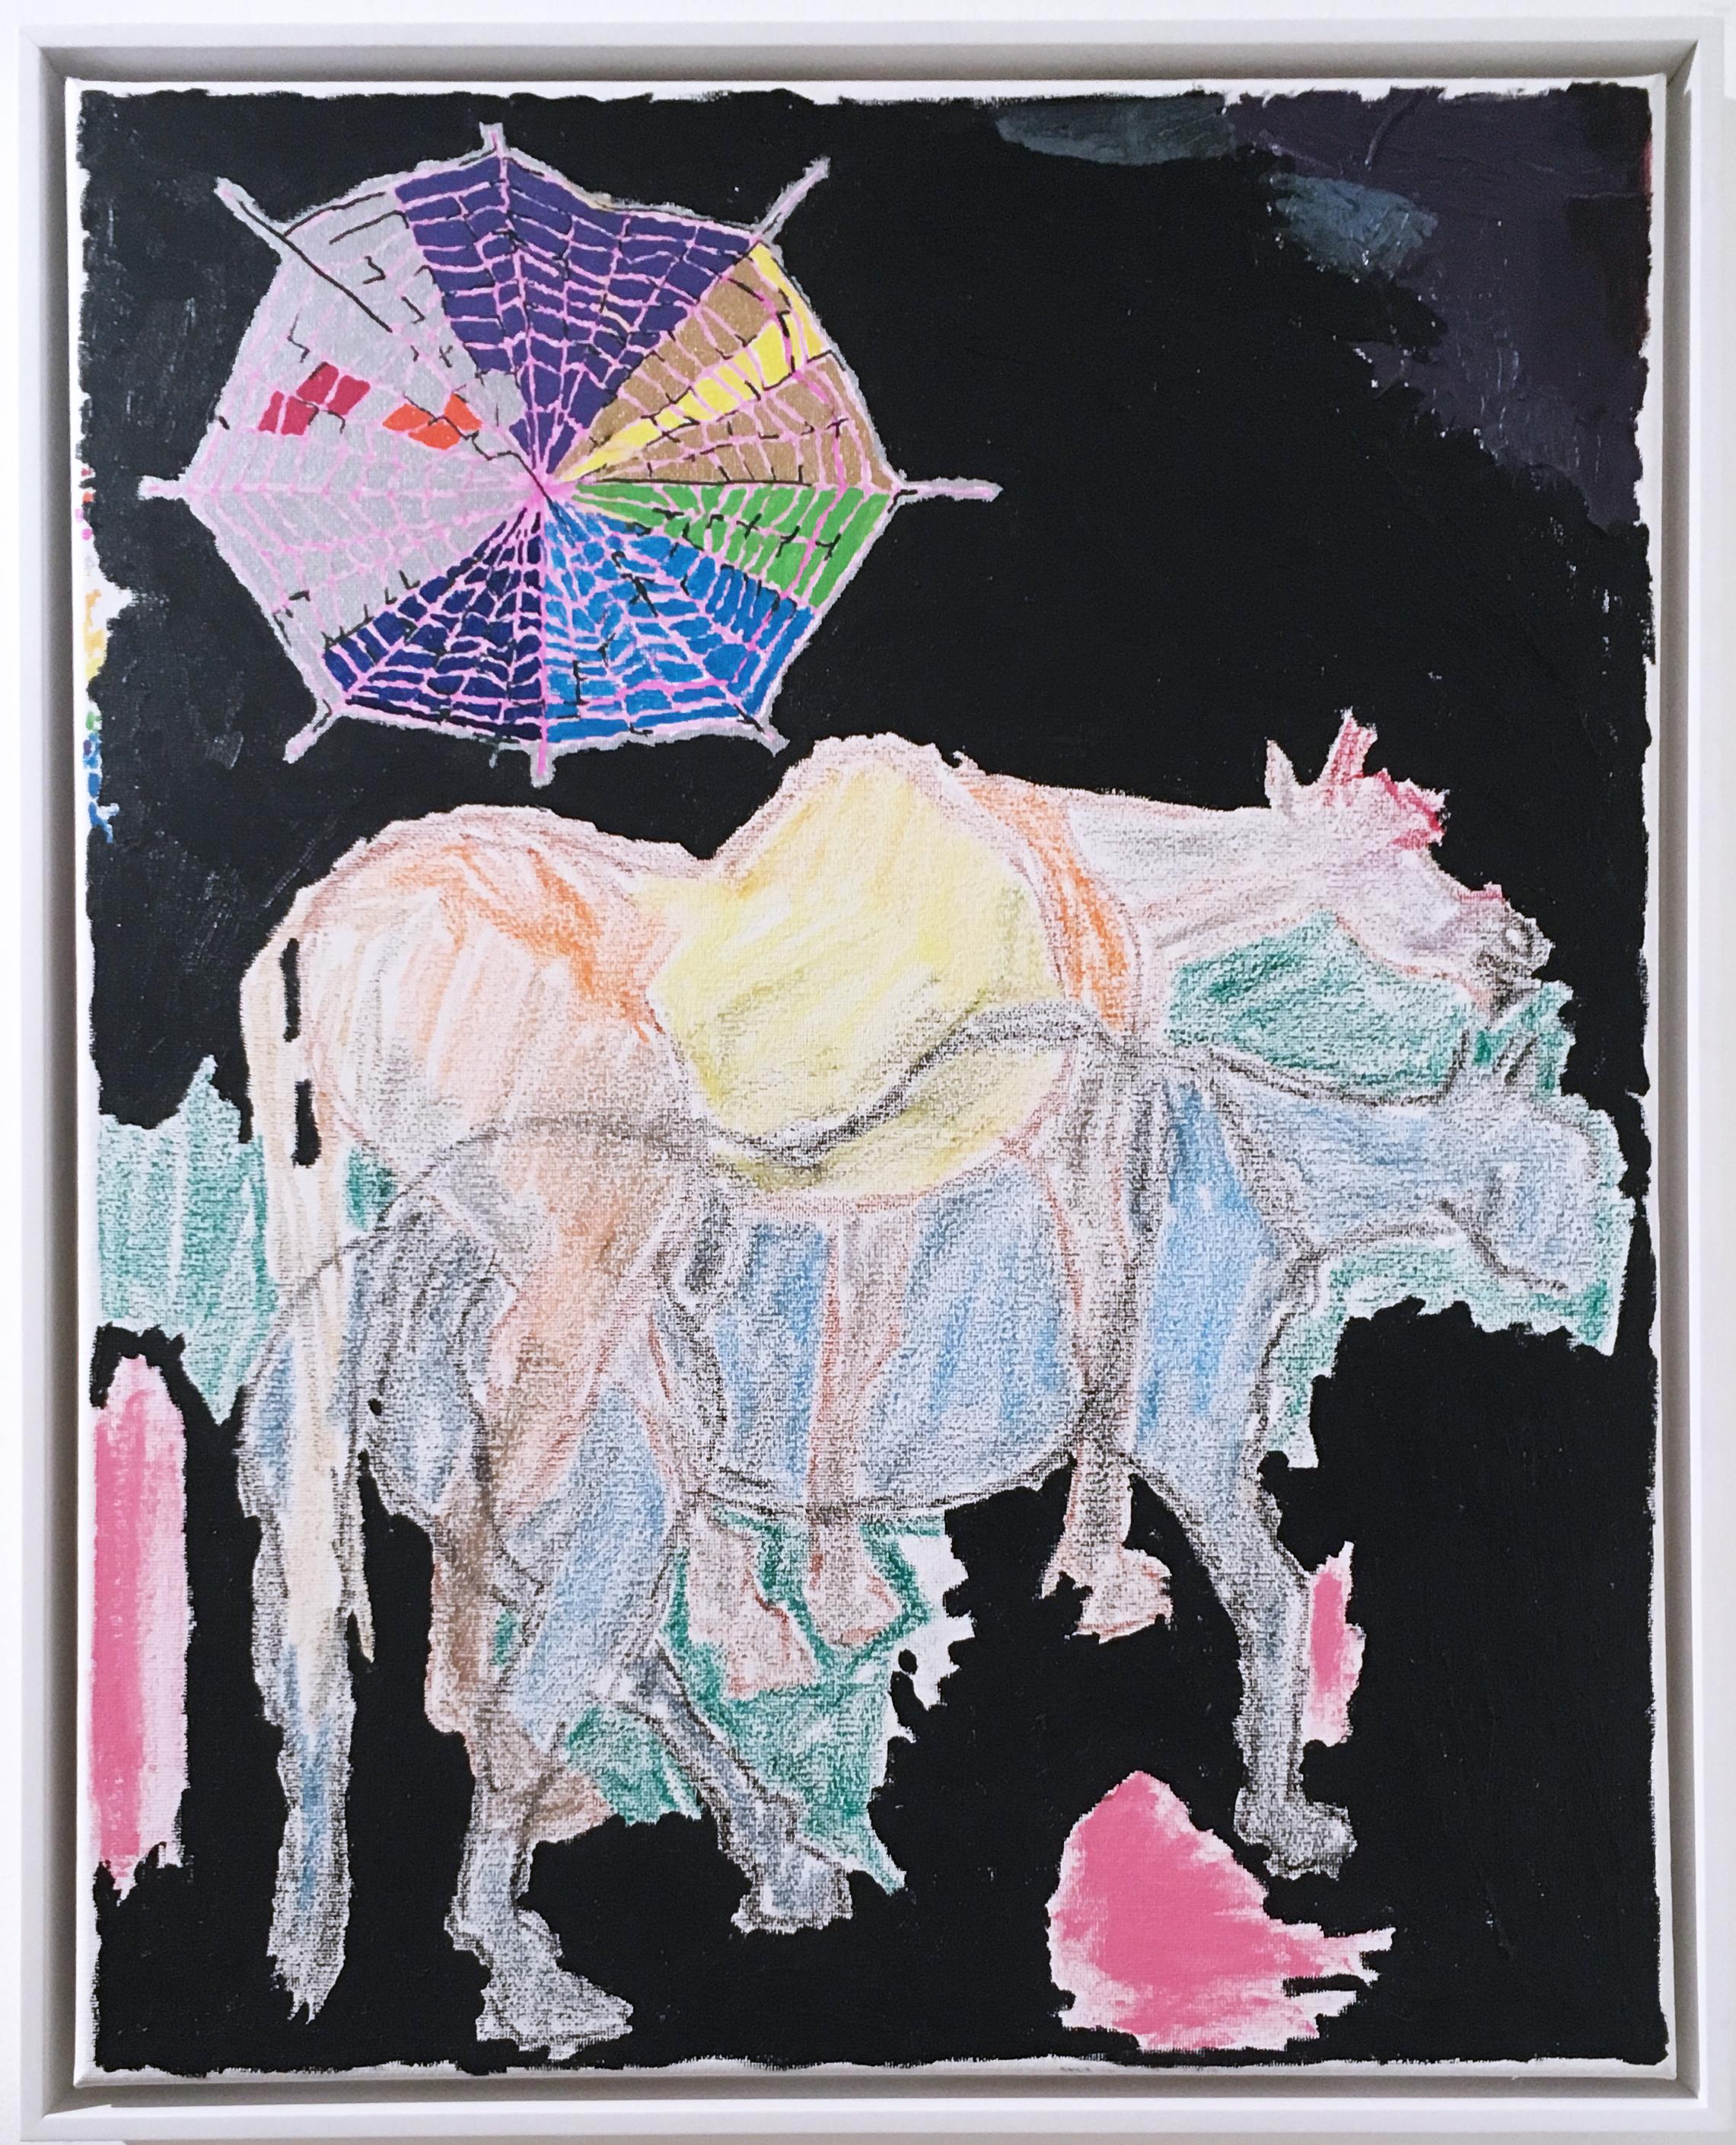 Animal Painting Macauley Norman - Cheval imaginaire, 2020, acrylique, huile, pastel, toile, noir, bleu, rose, abstrait